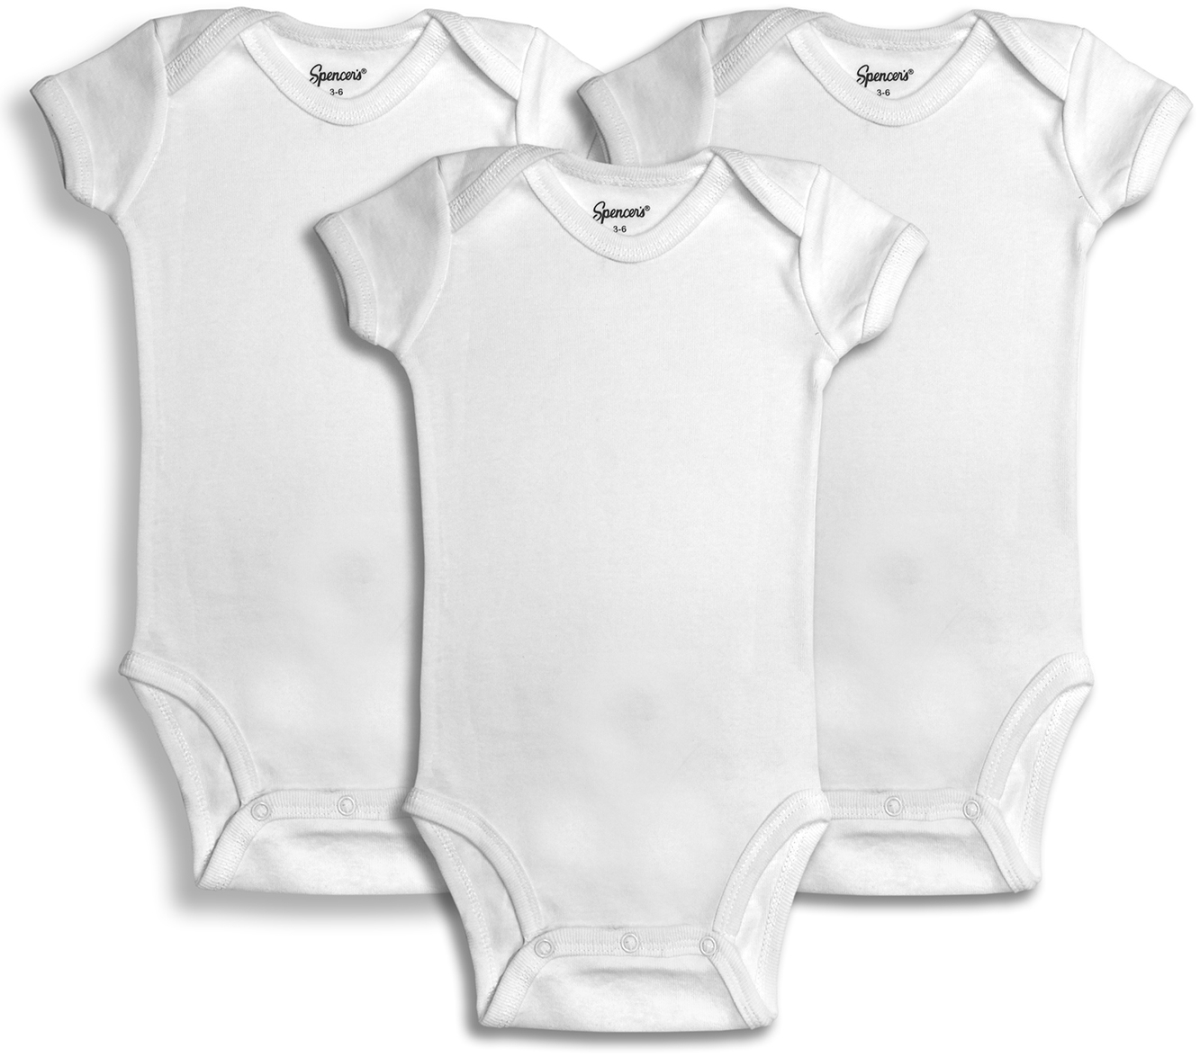 520-3-18 3 Piece White Bodysuits, 18 Months